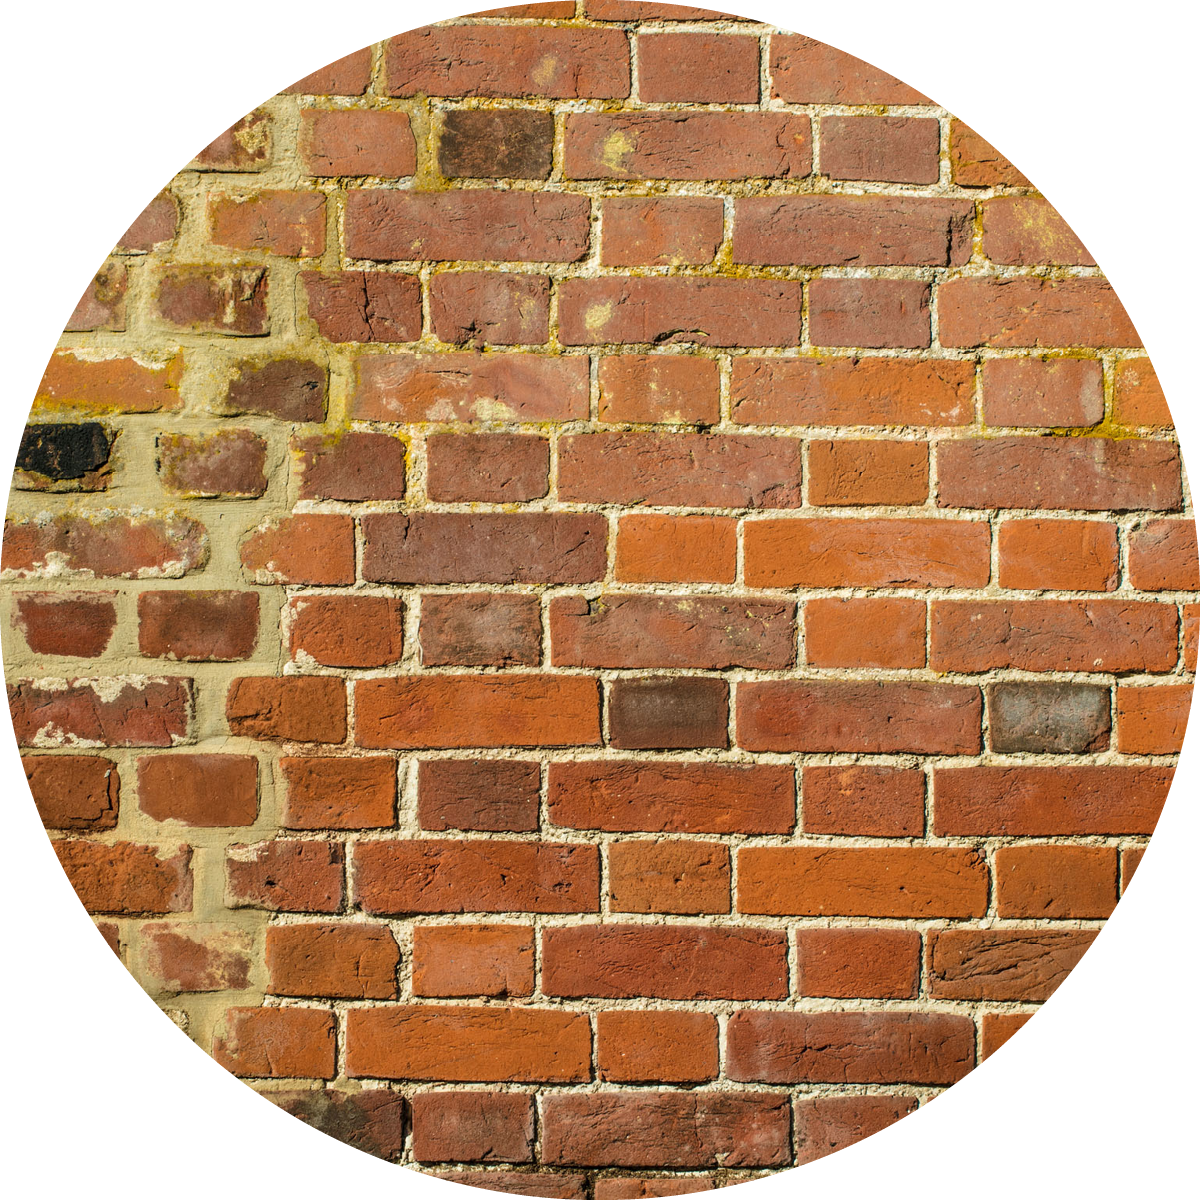 Brick, Brickwork, Wall, Orange, Beige, 